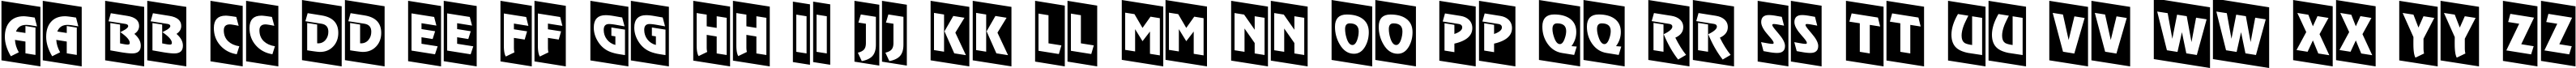 Пример написания английского алфавита шрифтом a_RewinderTitulCmDn